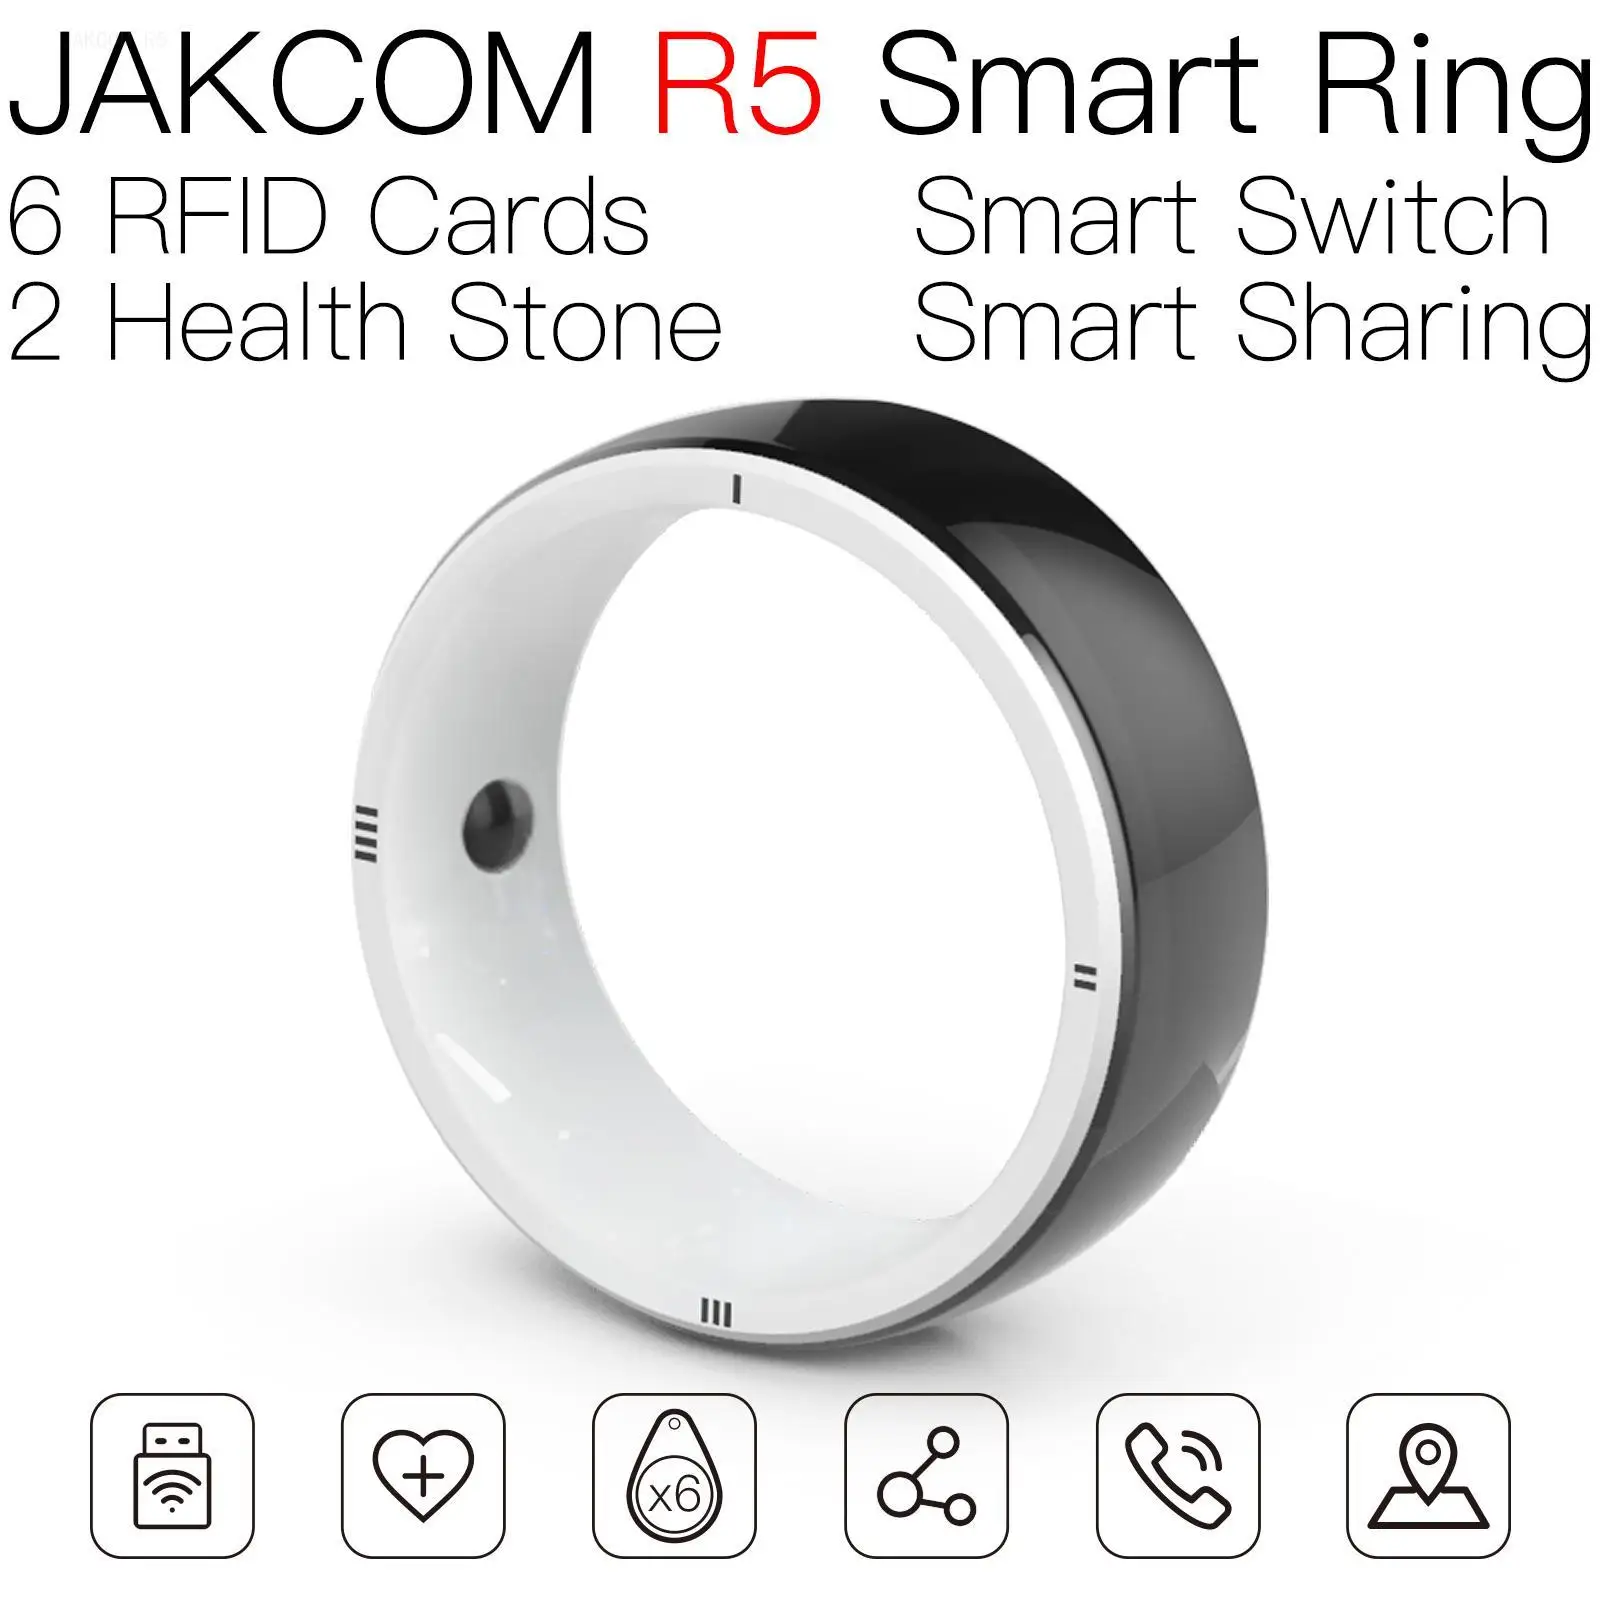 

Умное кольцо JAKCOM R5, лучше, чем rfid-метка, диск, склад, инвентарь, uhf gen2, карточка new horizon 72, Стандартная карта